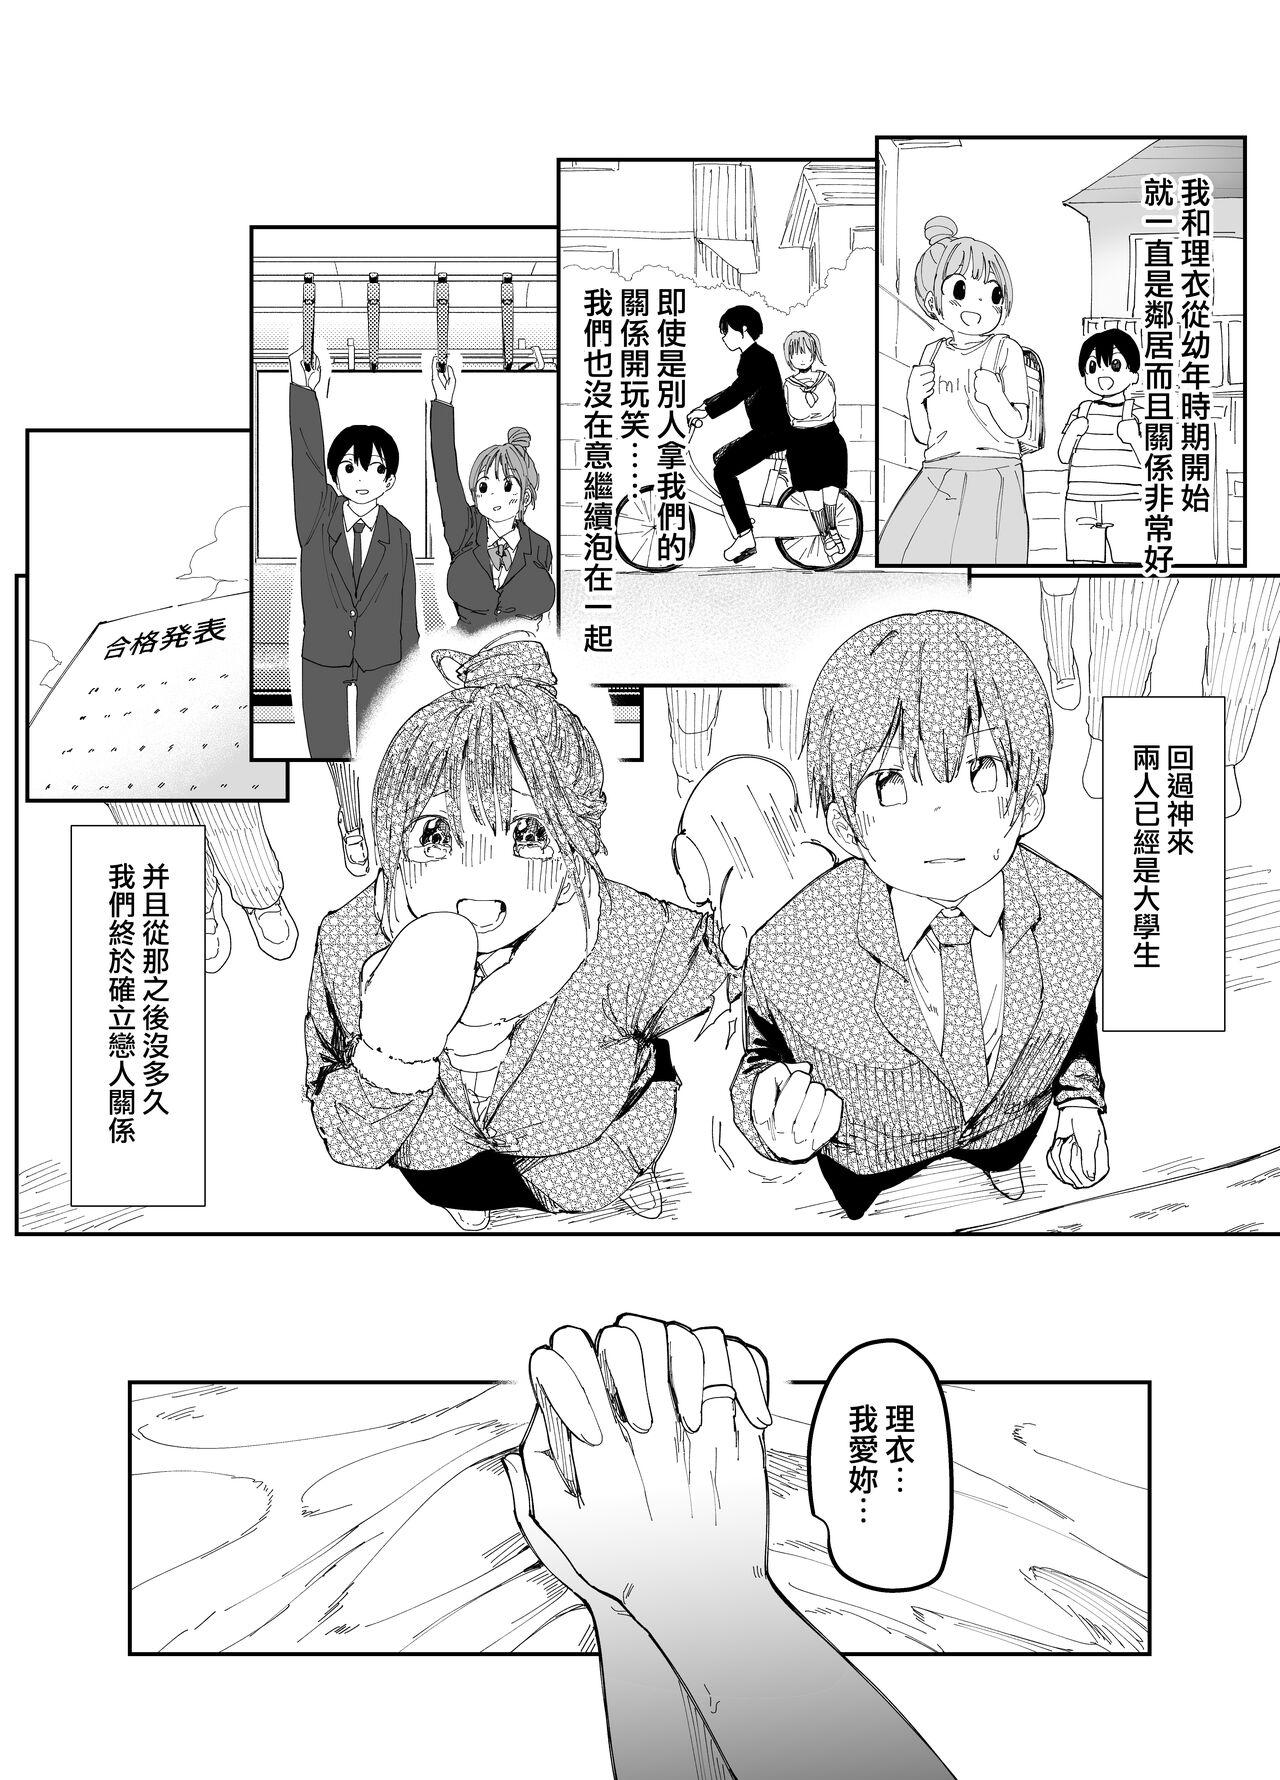 First Saiai no Kanojo ni Goui no Ue, Kako no Otoko ni Dakarete Moratta. - Original Teenporno - Page 4